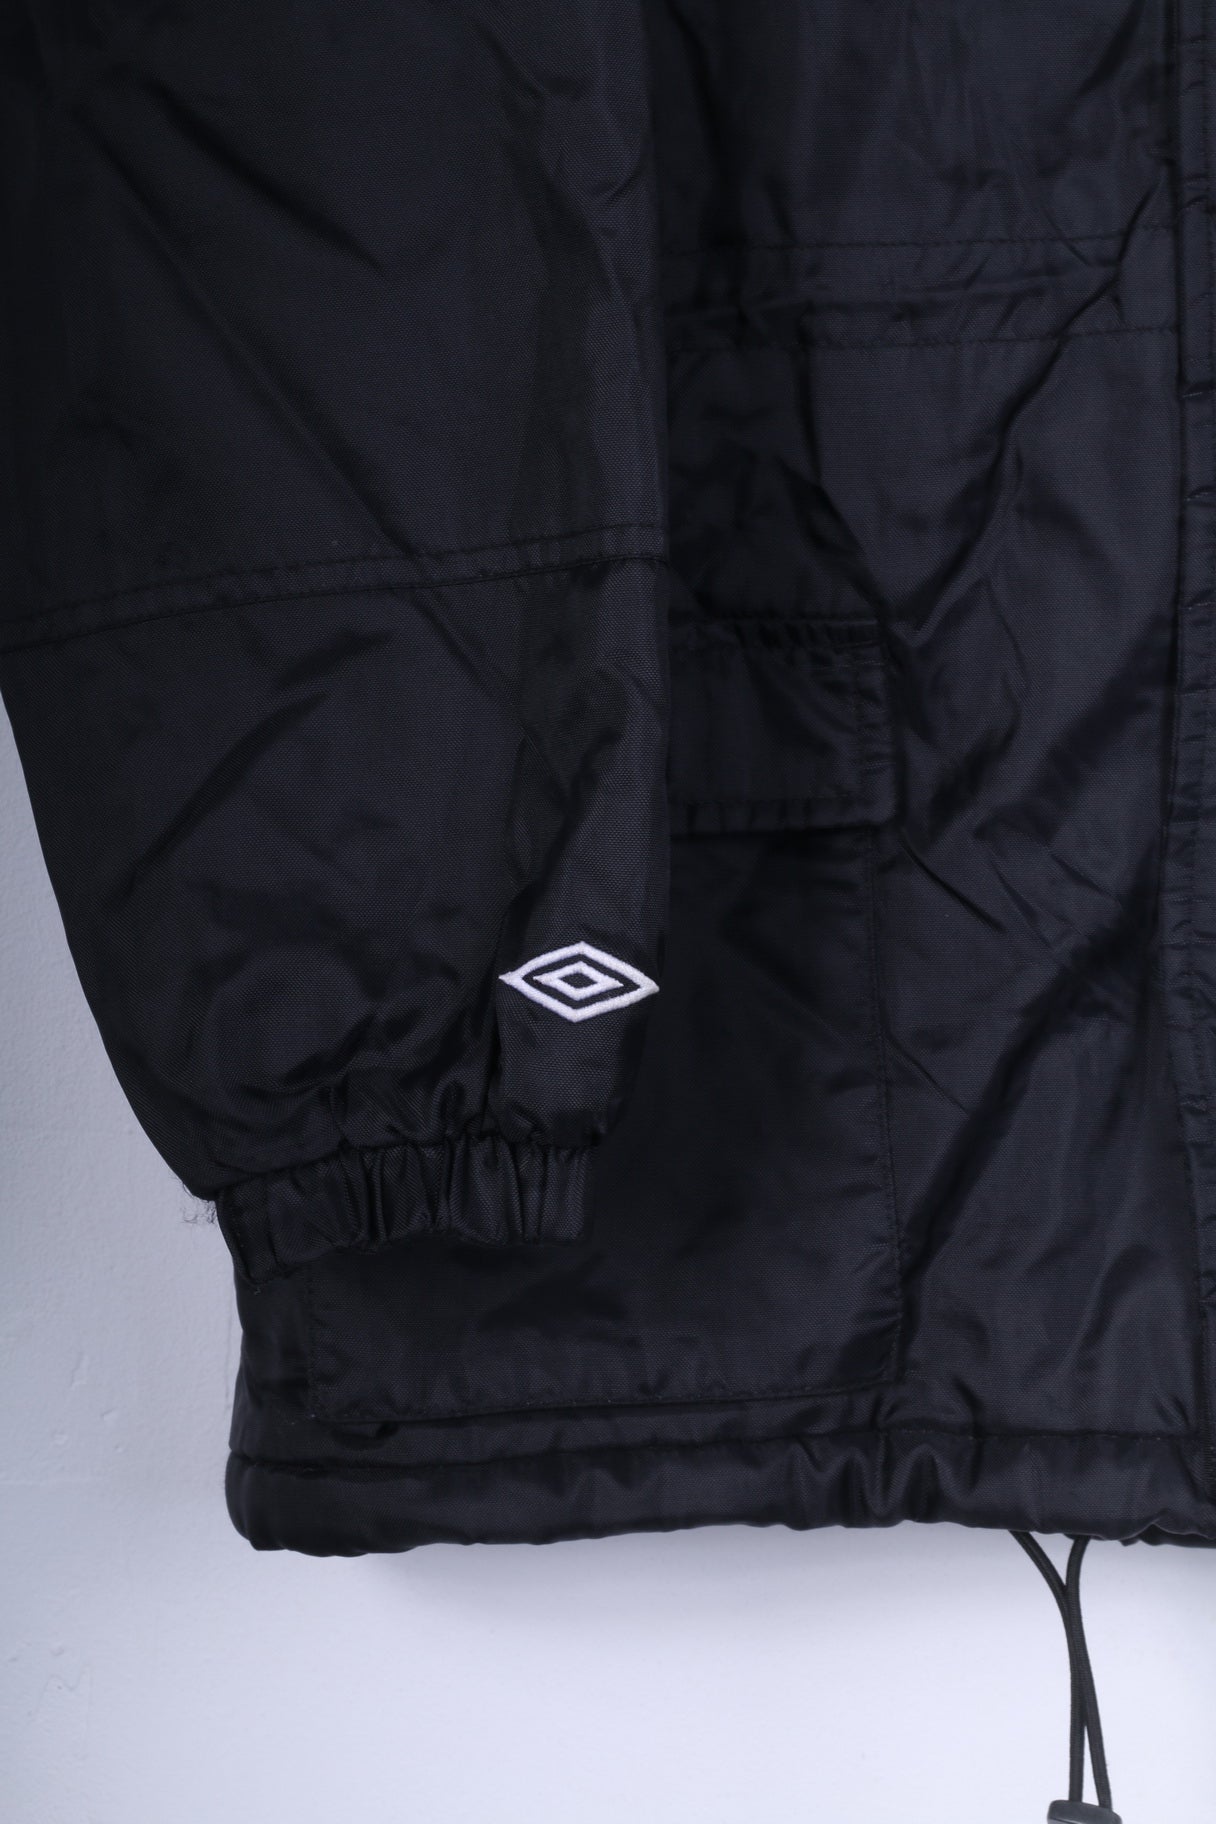 Umbro Boys XLB 164 Jacket Black Vintage Nylon Zip Up Hidden Hood Sport Top